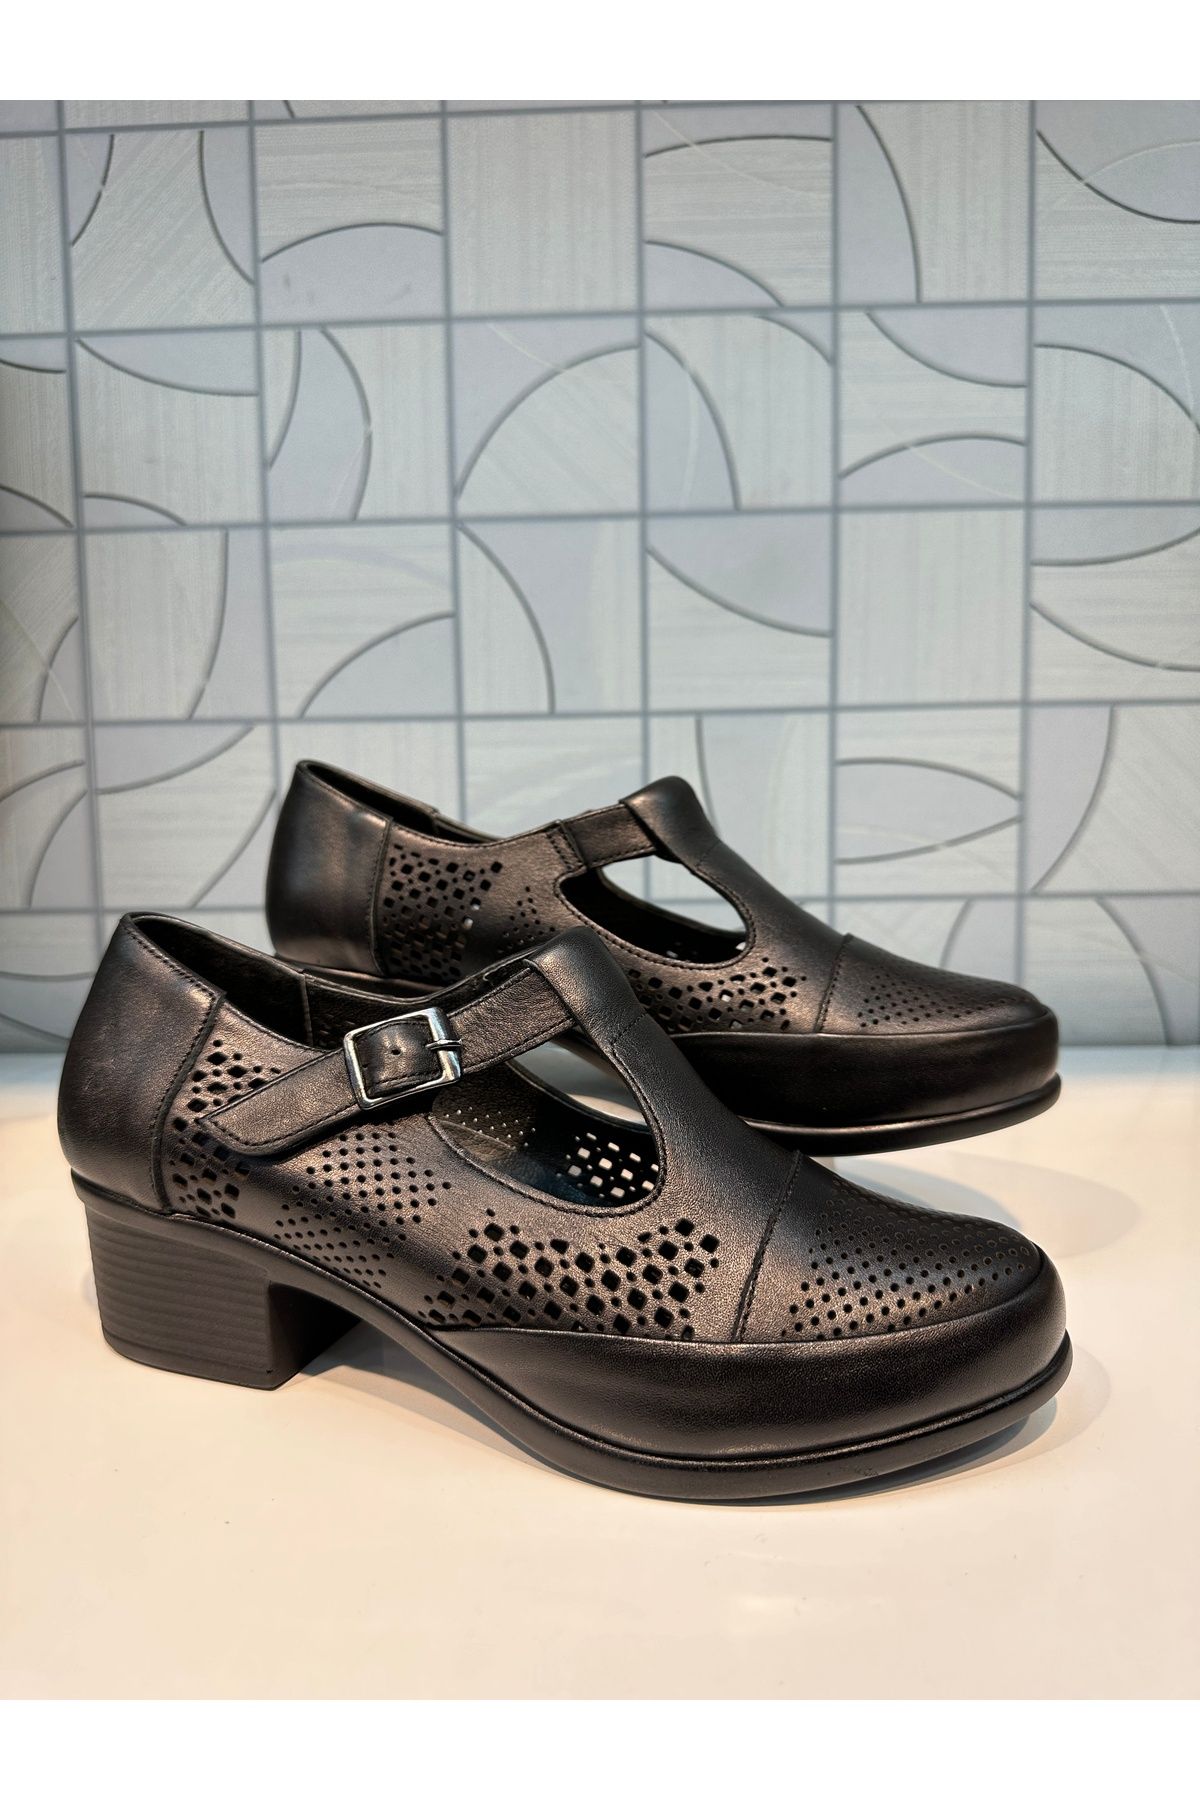 Anıl Ayakkabı Castle 24565 Kadın Siyah Hakiki Deri Topuklu Kemer Toka Bağlamalı Günlük Ayakkabı - Anıl Ayakkabı